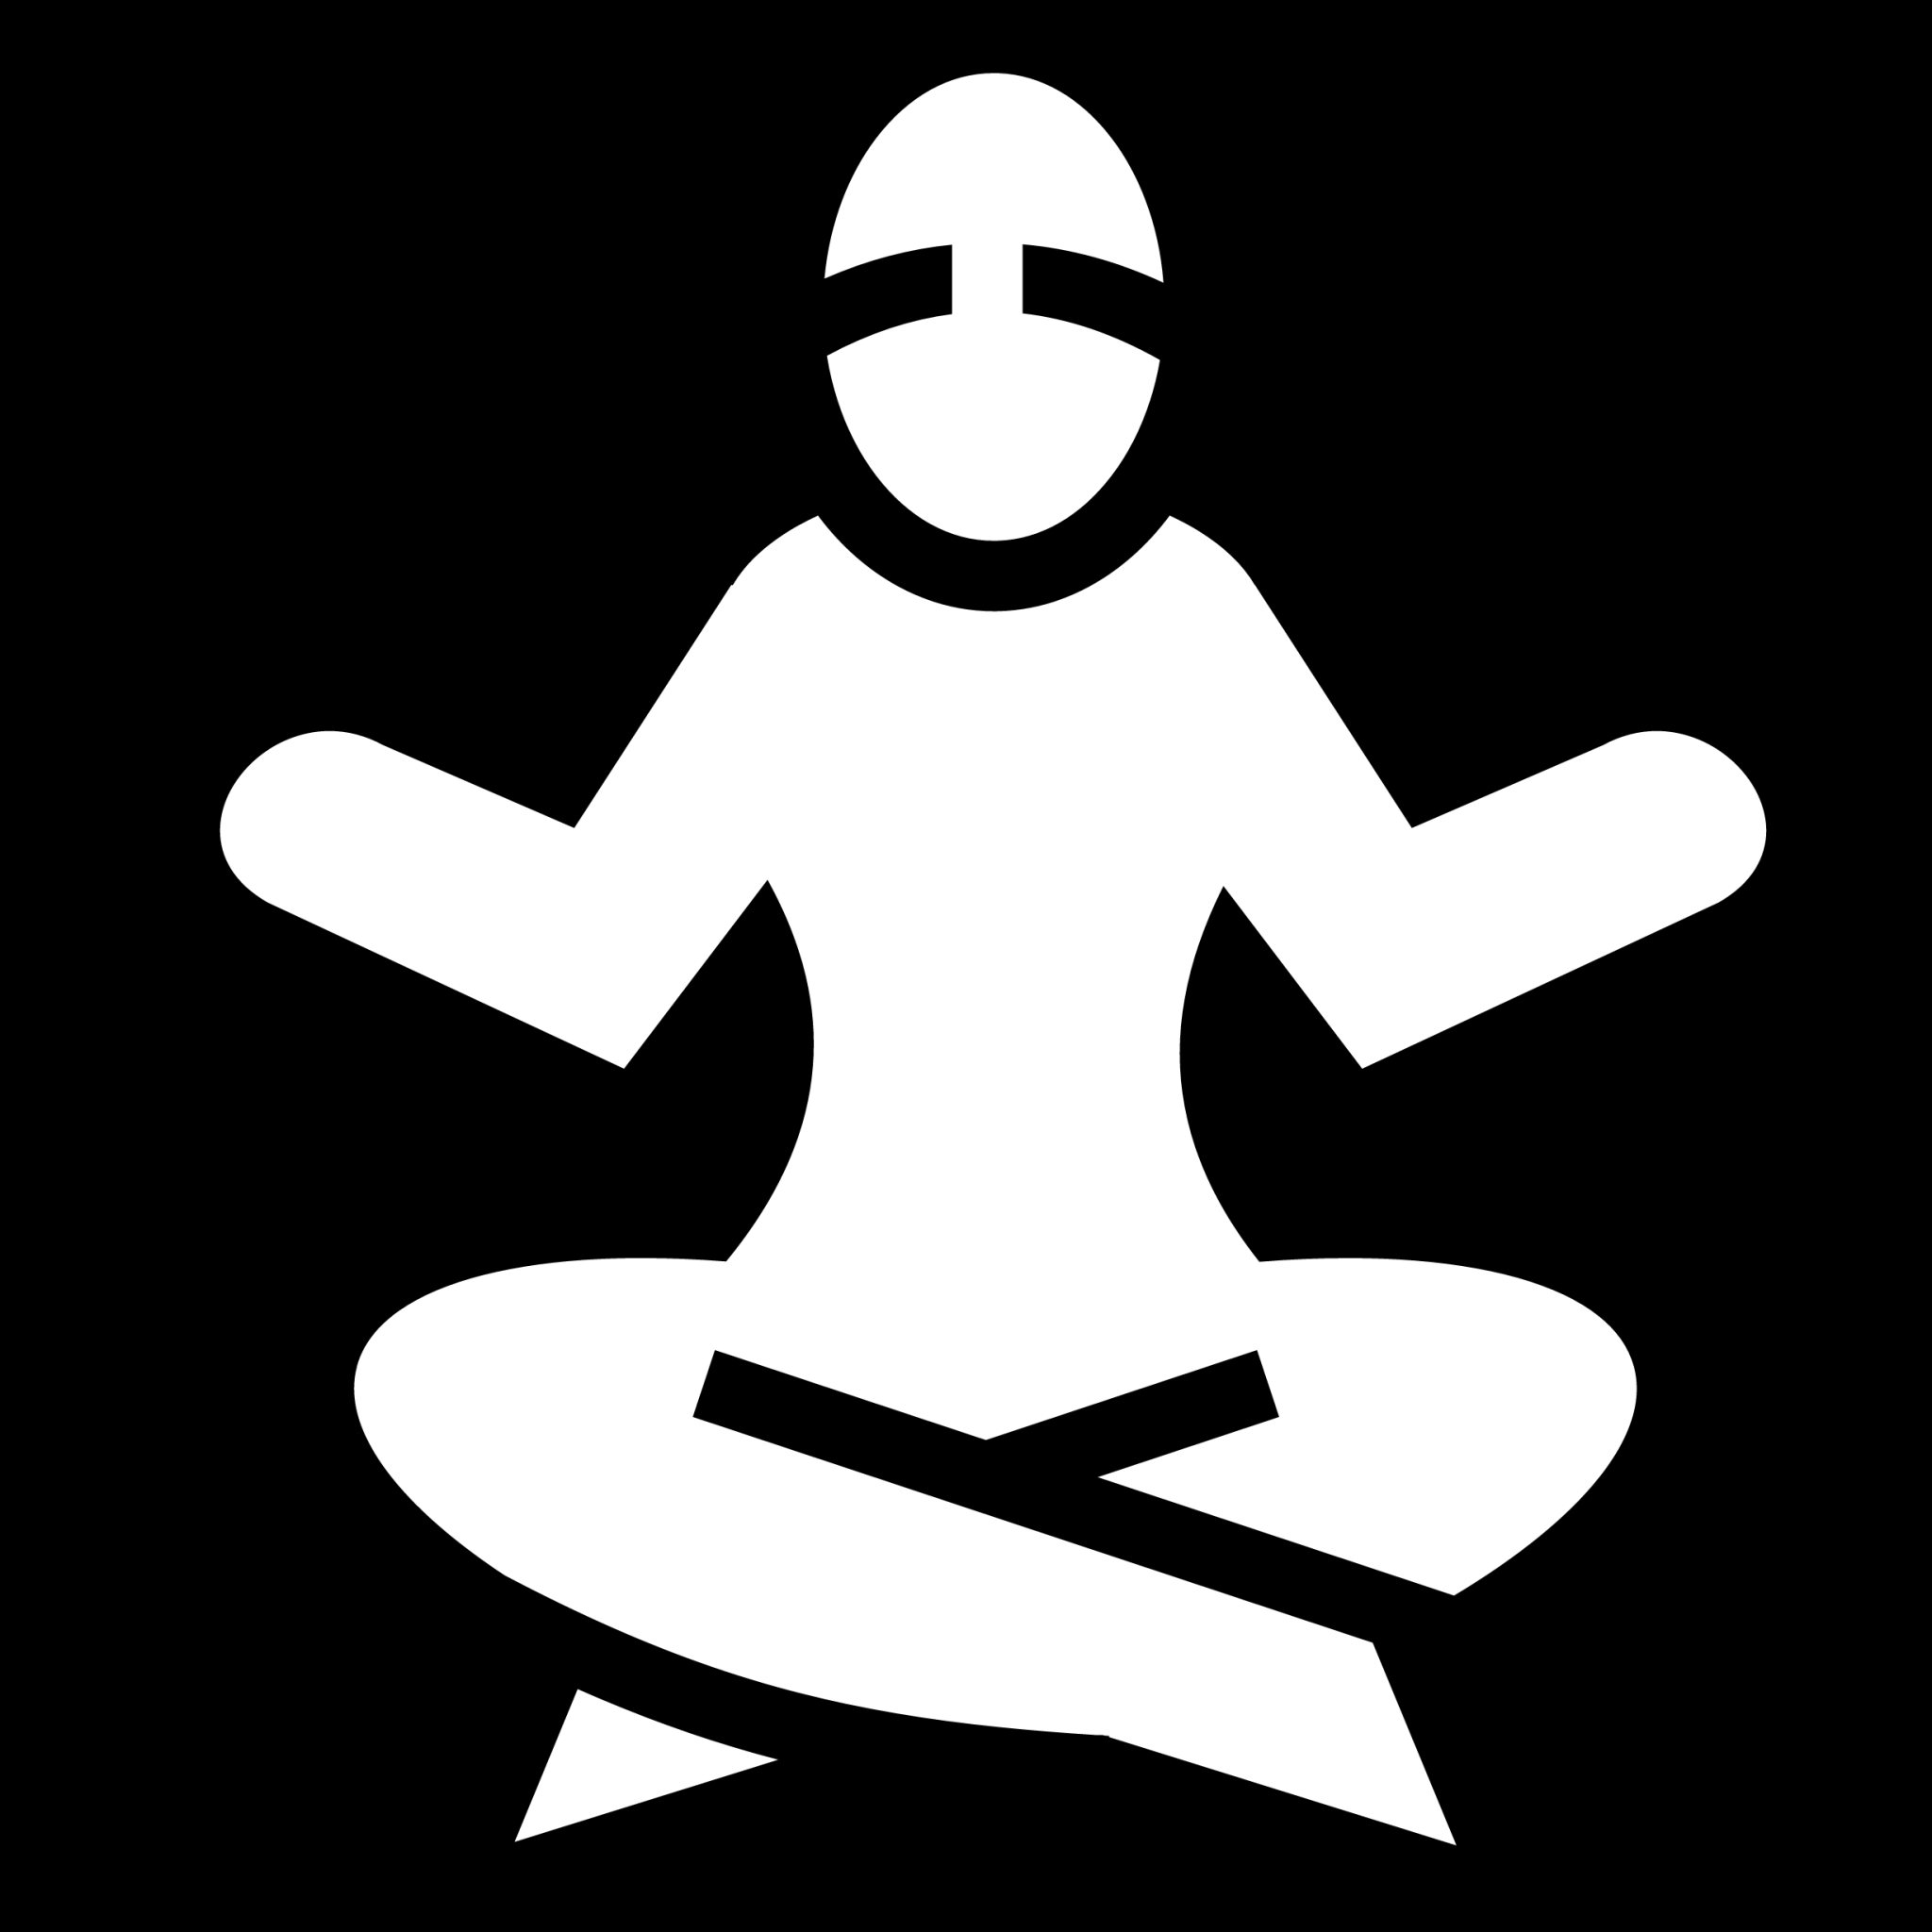 yoga symbols png